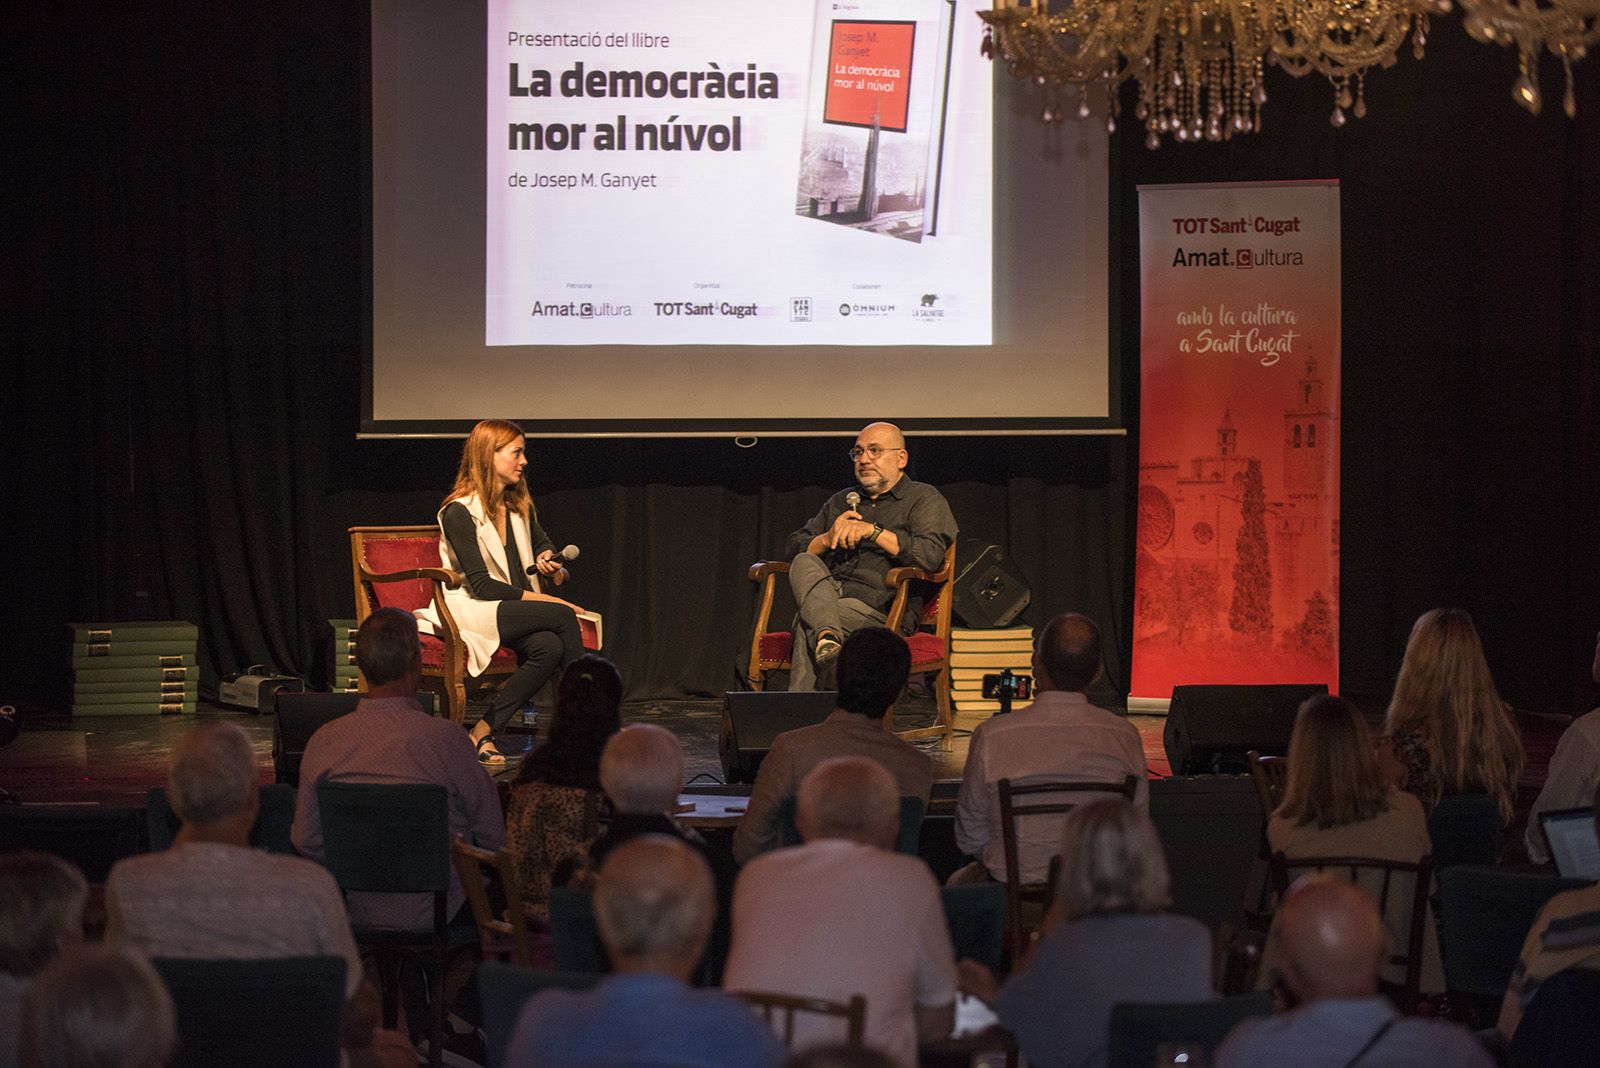 Presentació del llibre 'La democràcia mor al núvol' de Josep M. Ganyet. FOTO: Bernat Millet.